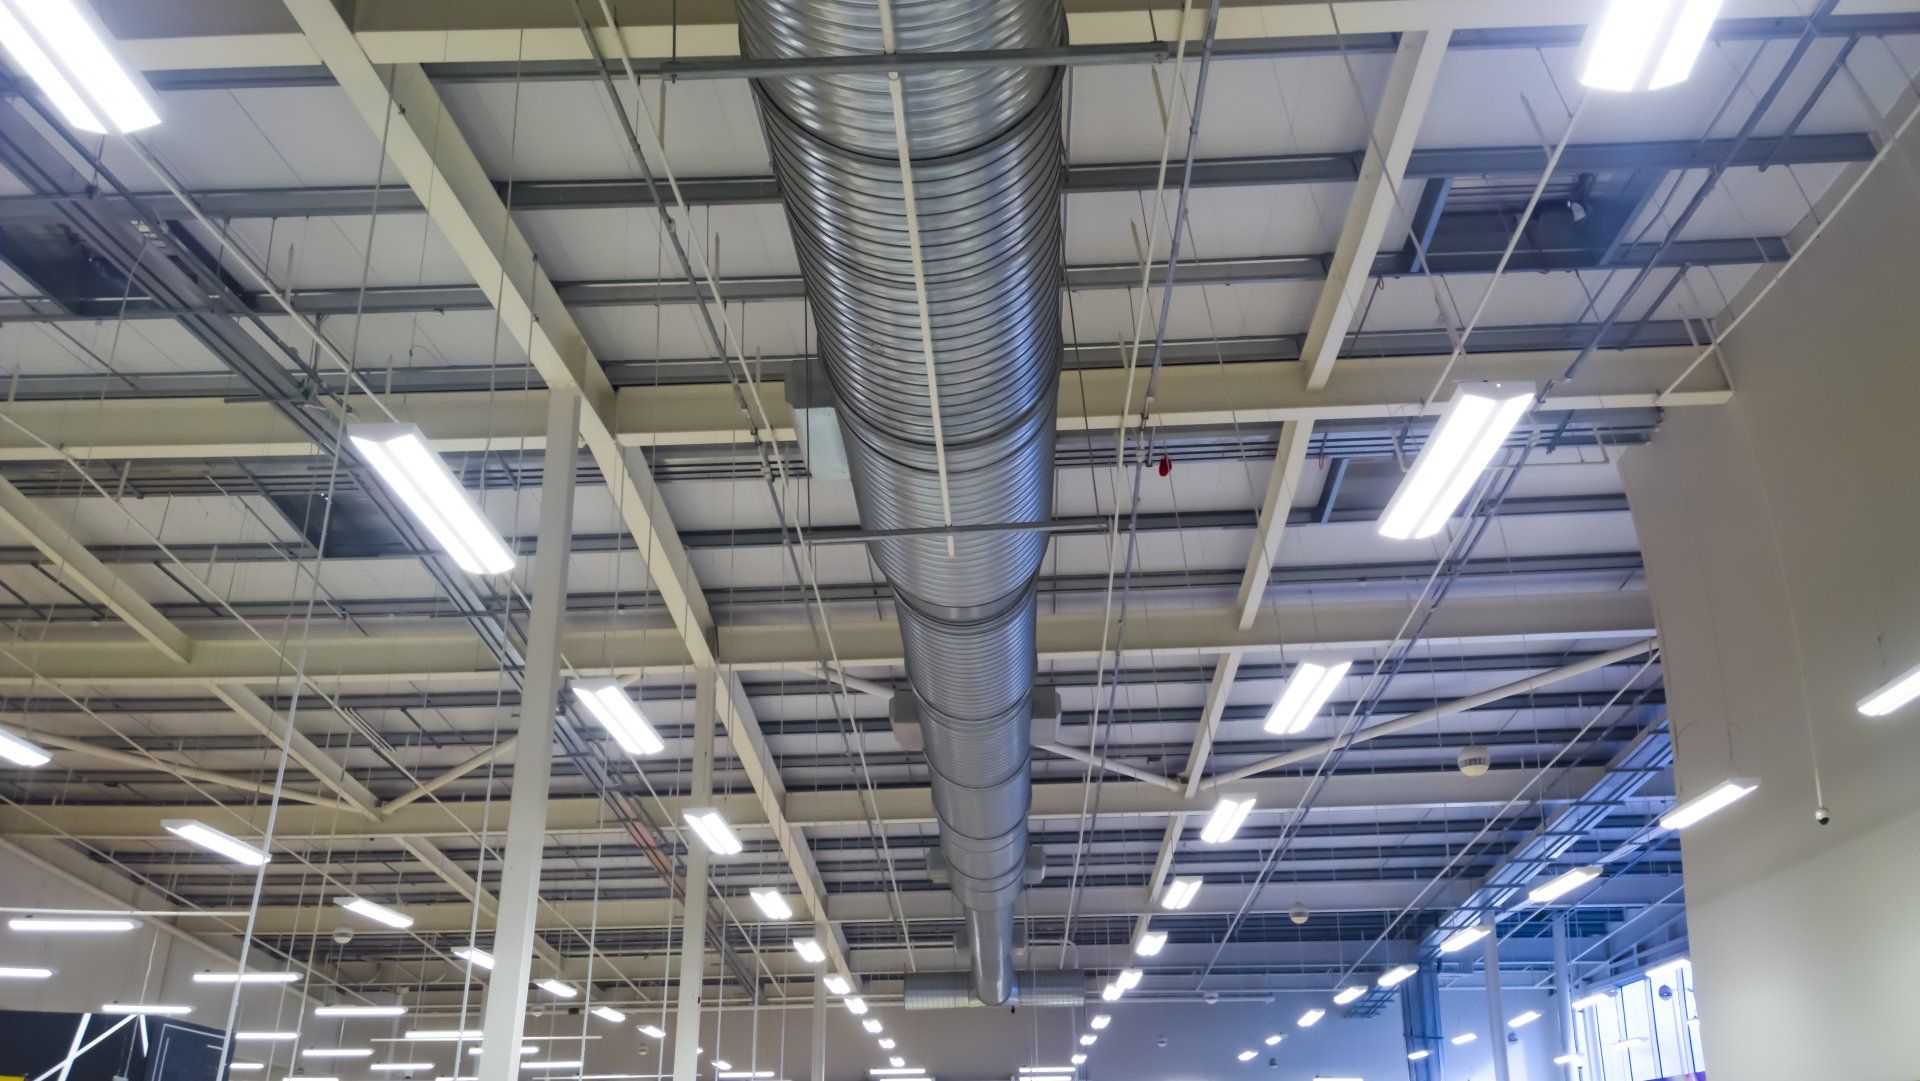 Ventilation system installations